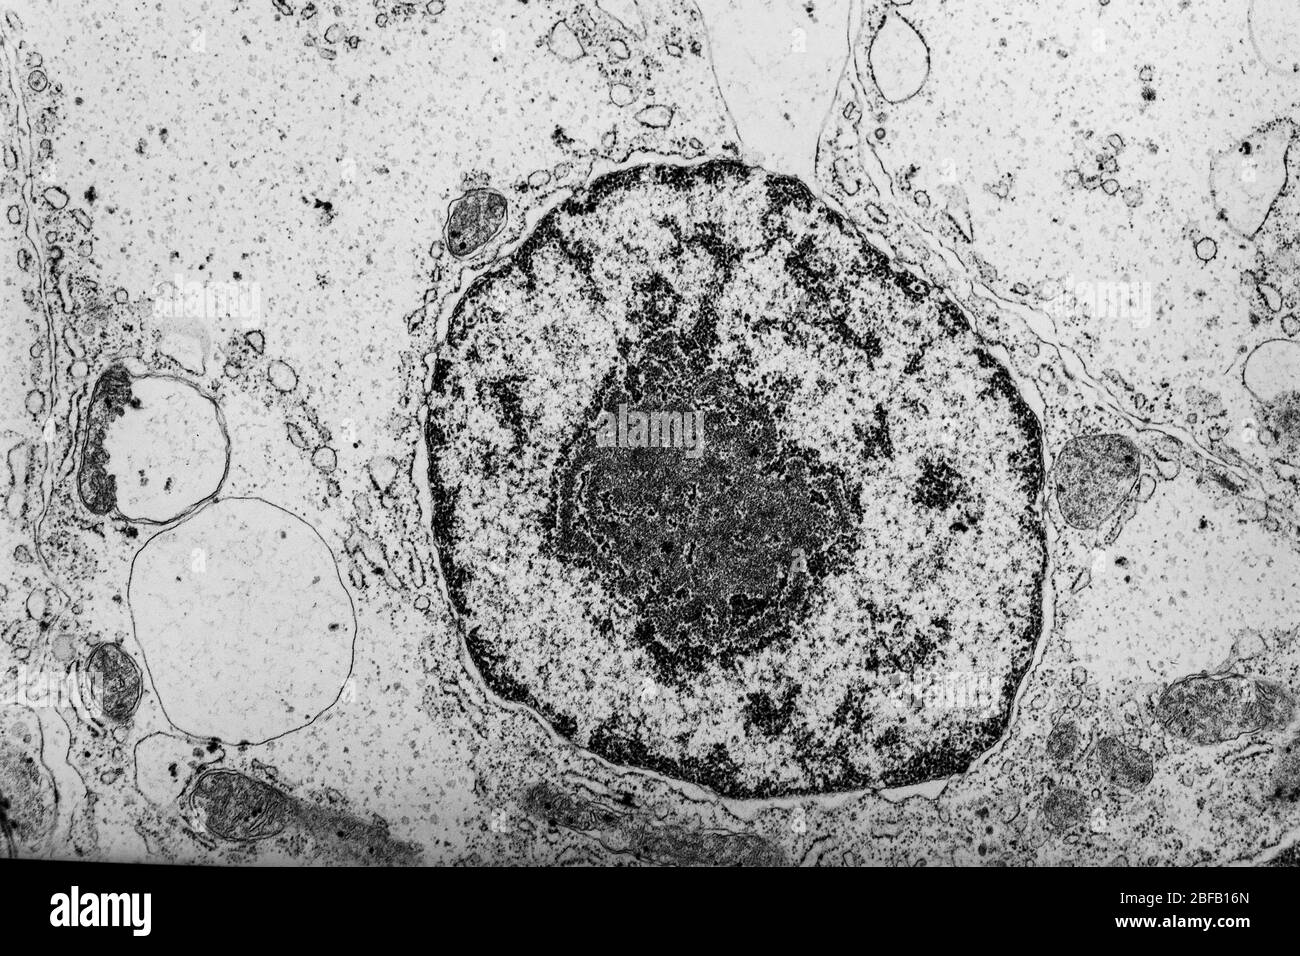 Núcleo celular con organelos en el microscopio electrónico 50,000x Foto de stock